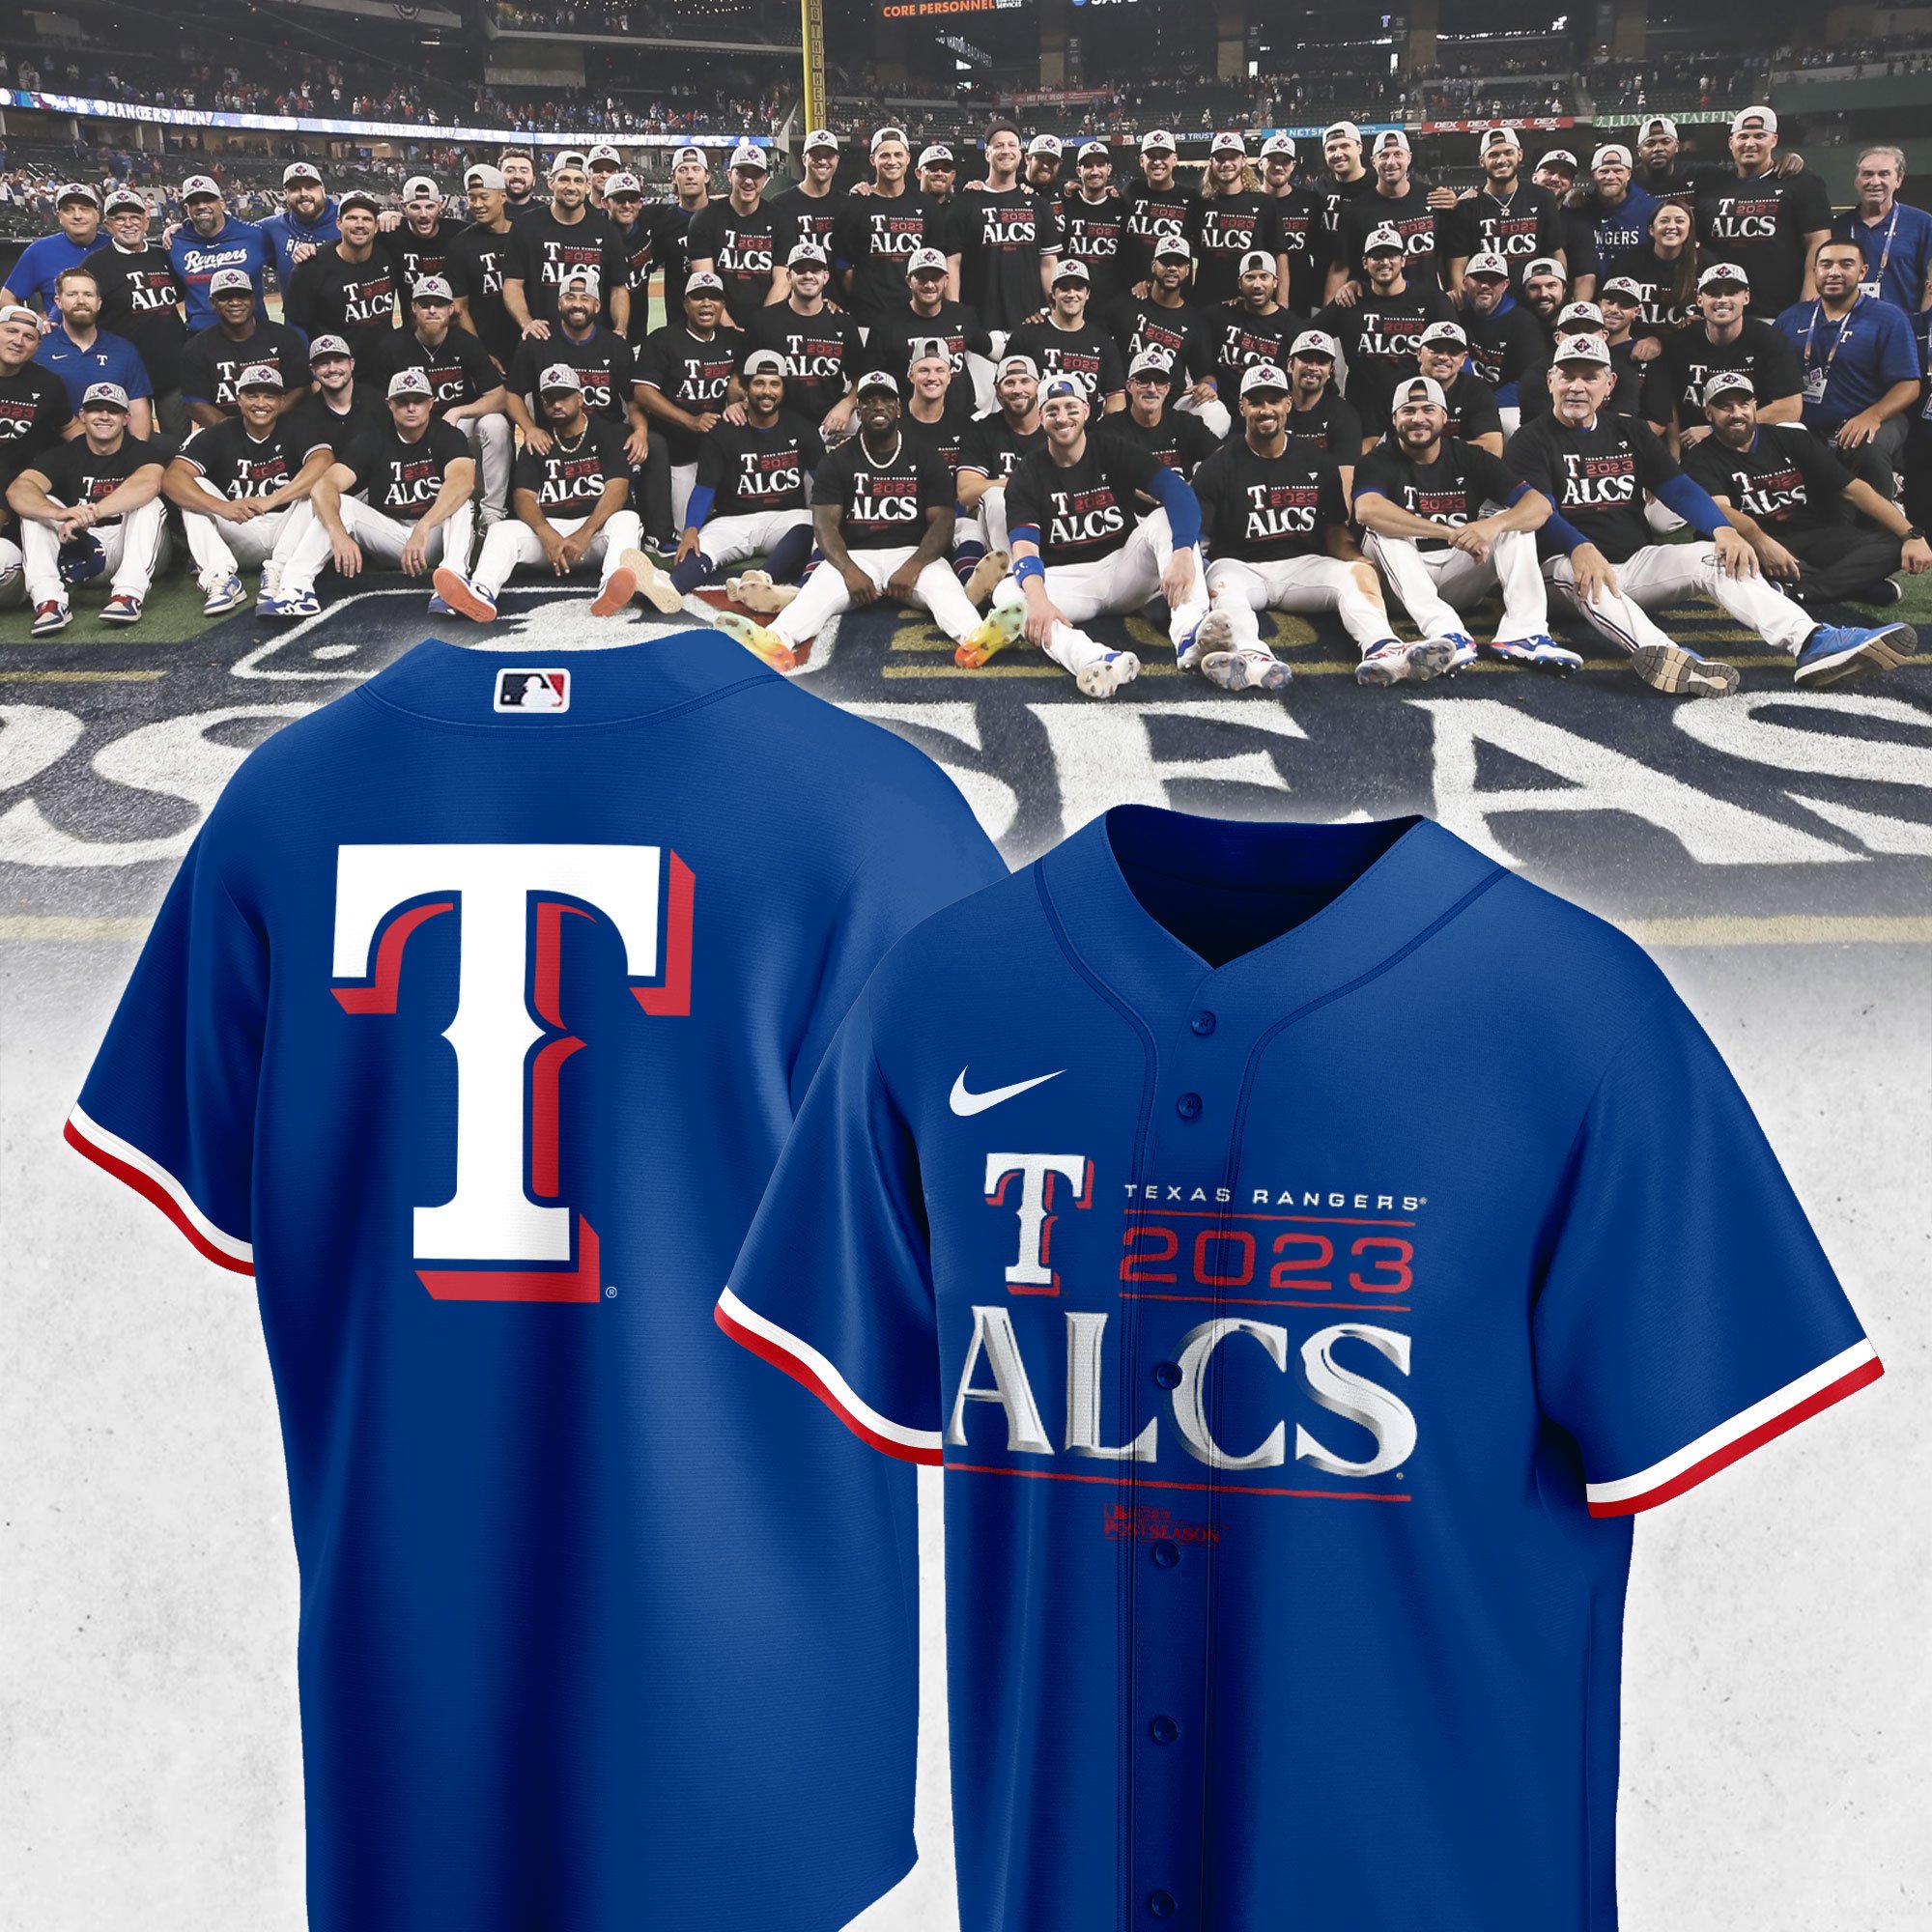 Texas Rangers Branded Blue ALCS Locker Room Jersey - BTF Trend